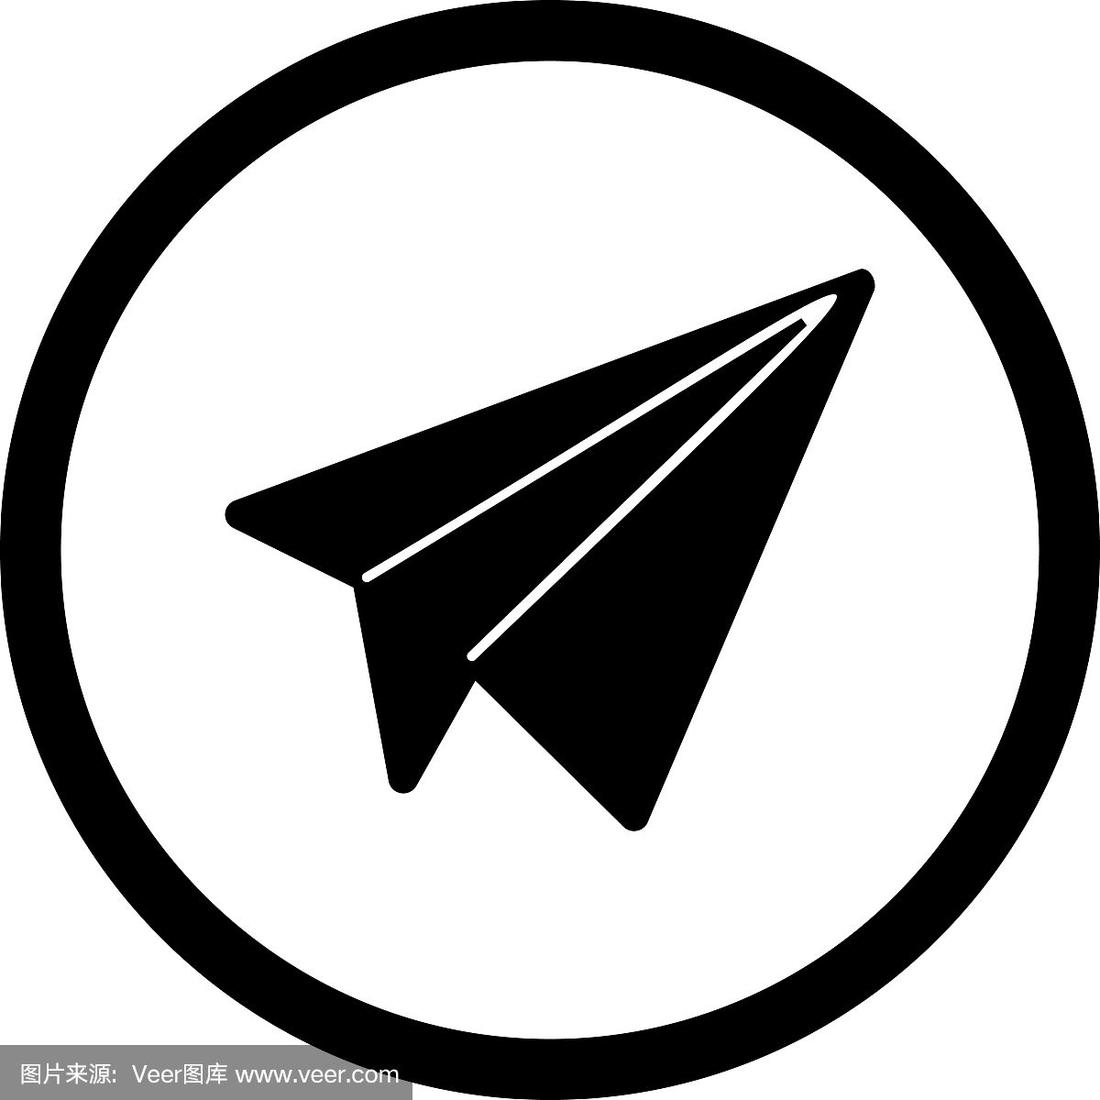 纸飞机图标的聊天软件-一个纸飞机的图标社交软件